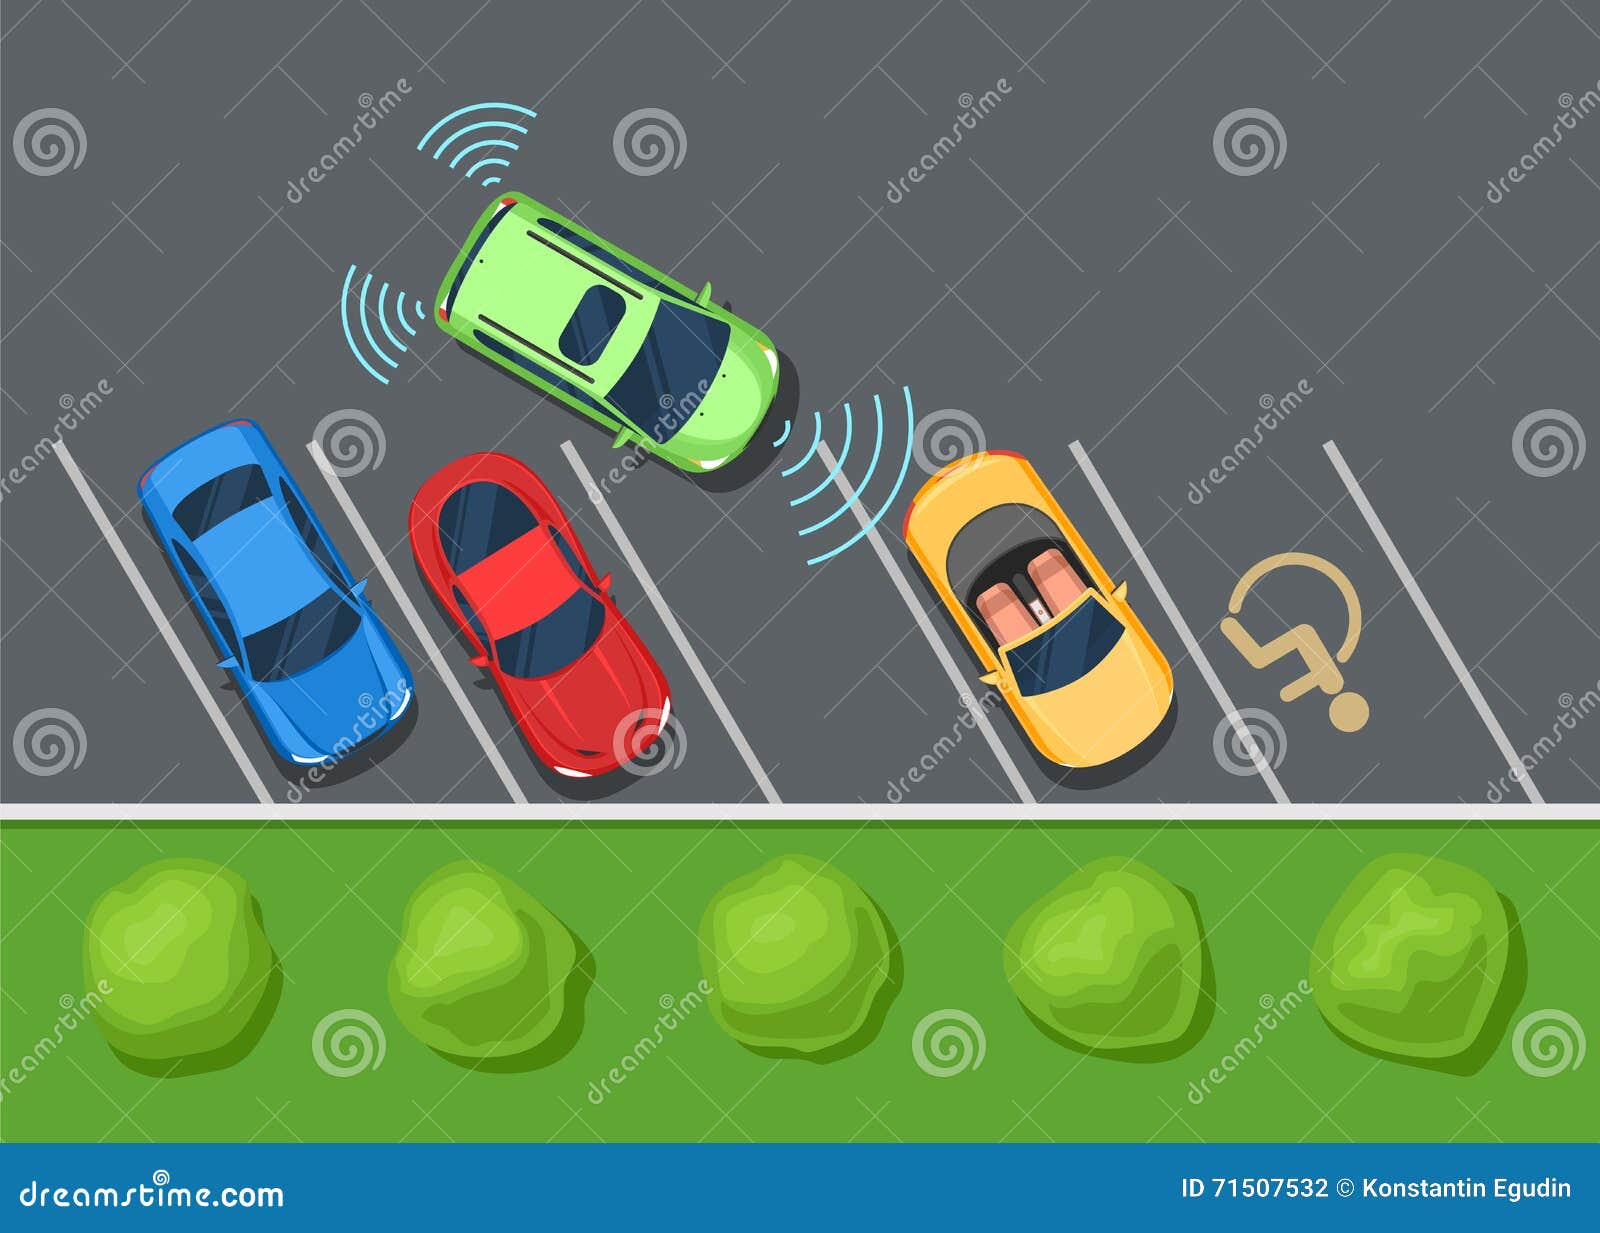 parking assist system safety, smart car